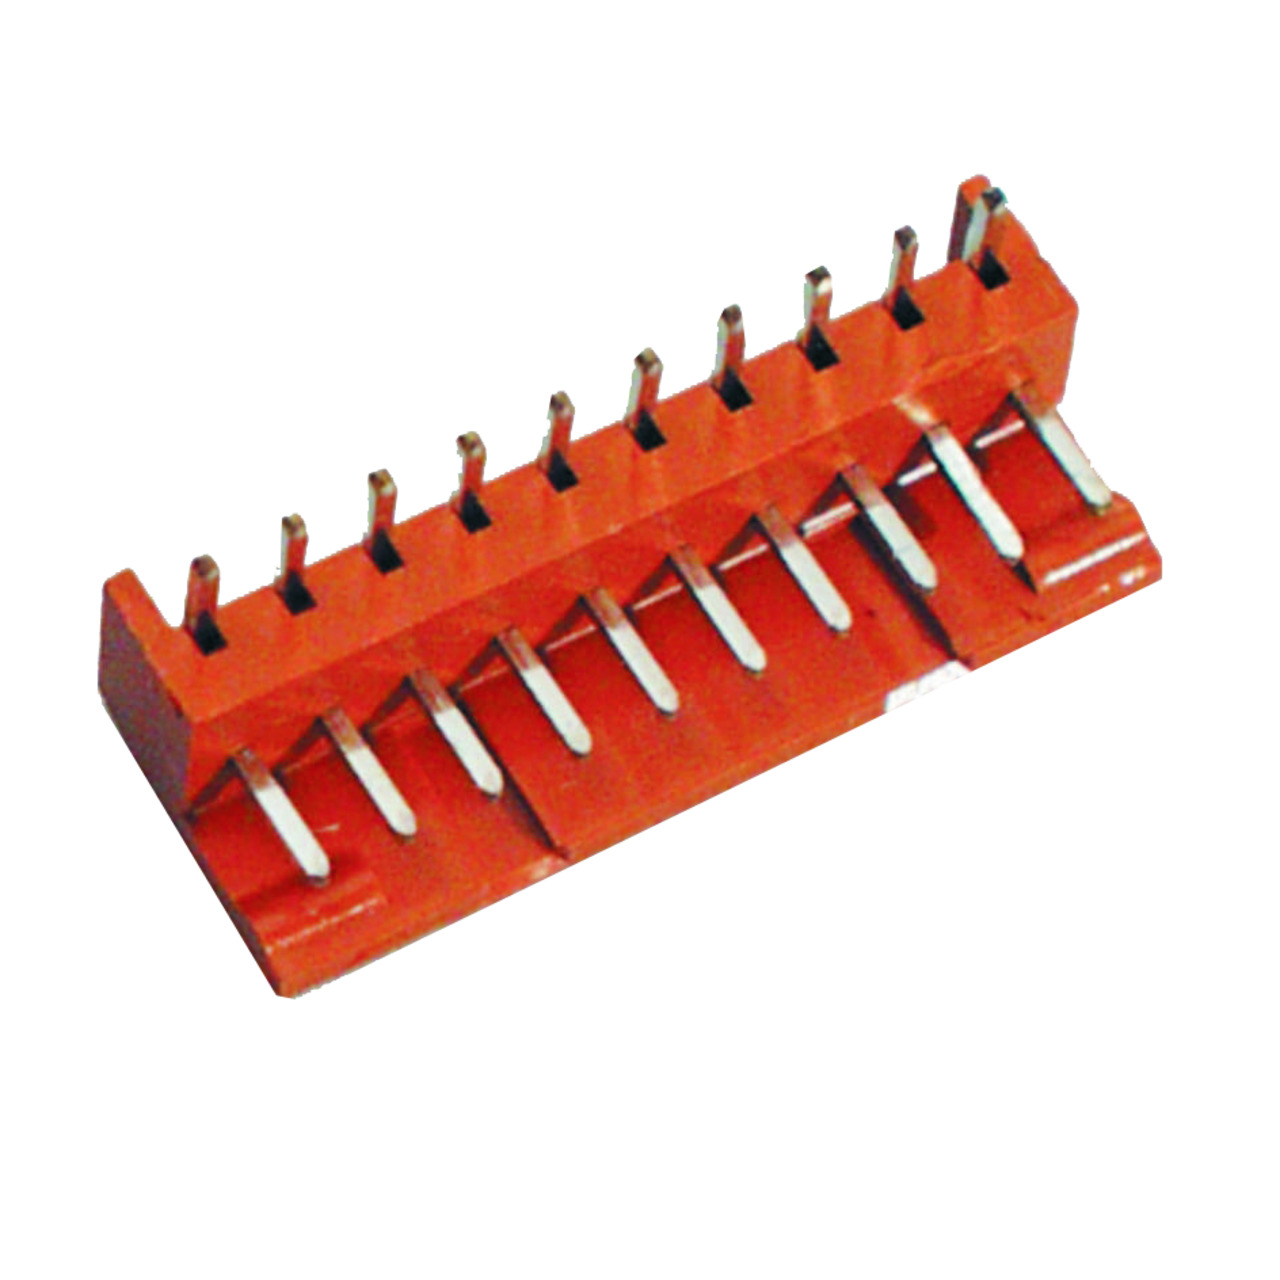 BKL Electronic Platinen-Steckverbinder Unterteil- 5 polig- gewinkelt- Raster 2-5 mm unter Komponenten